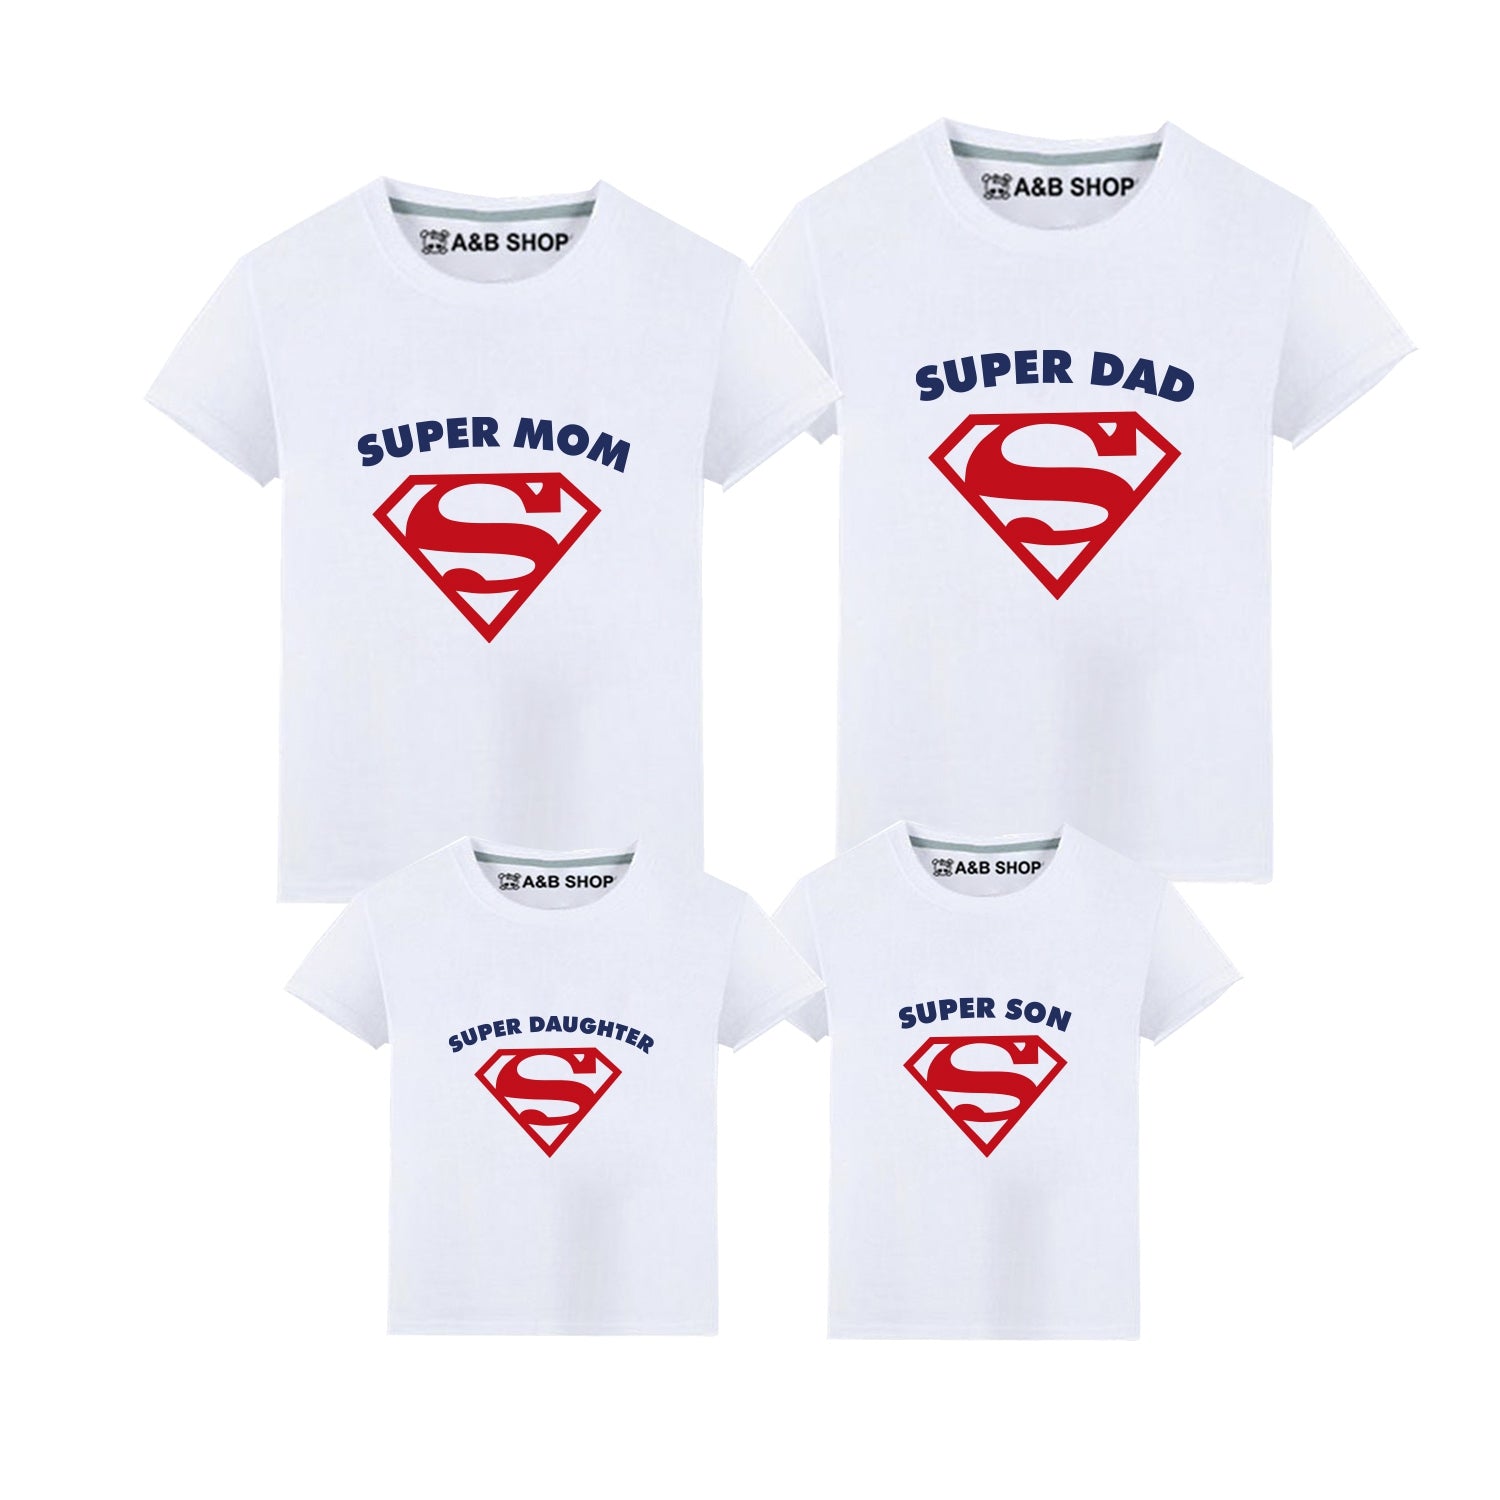 Superity T -Shirt, maman et enfants